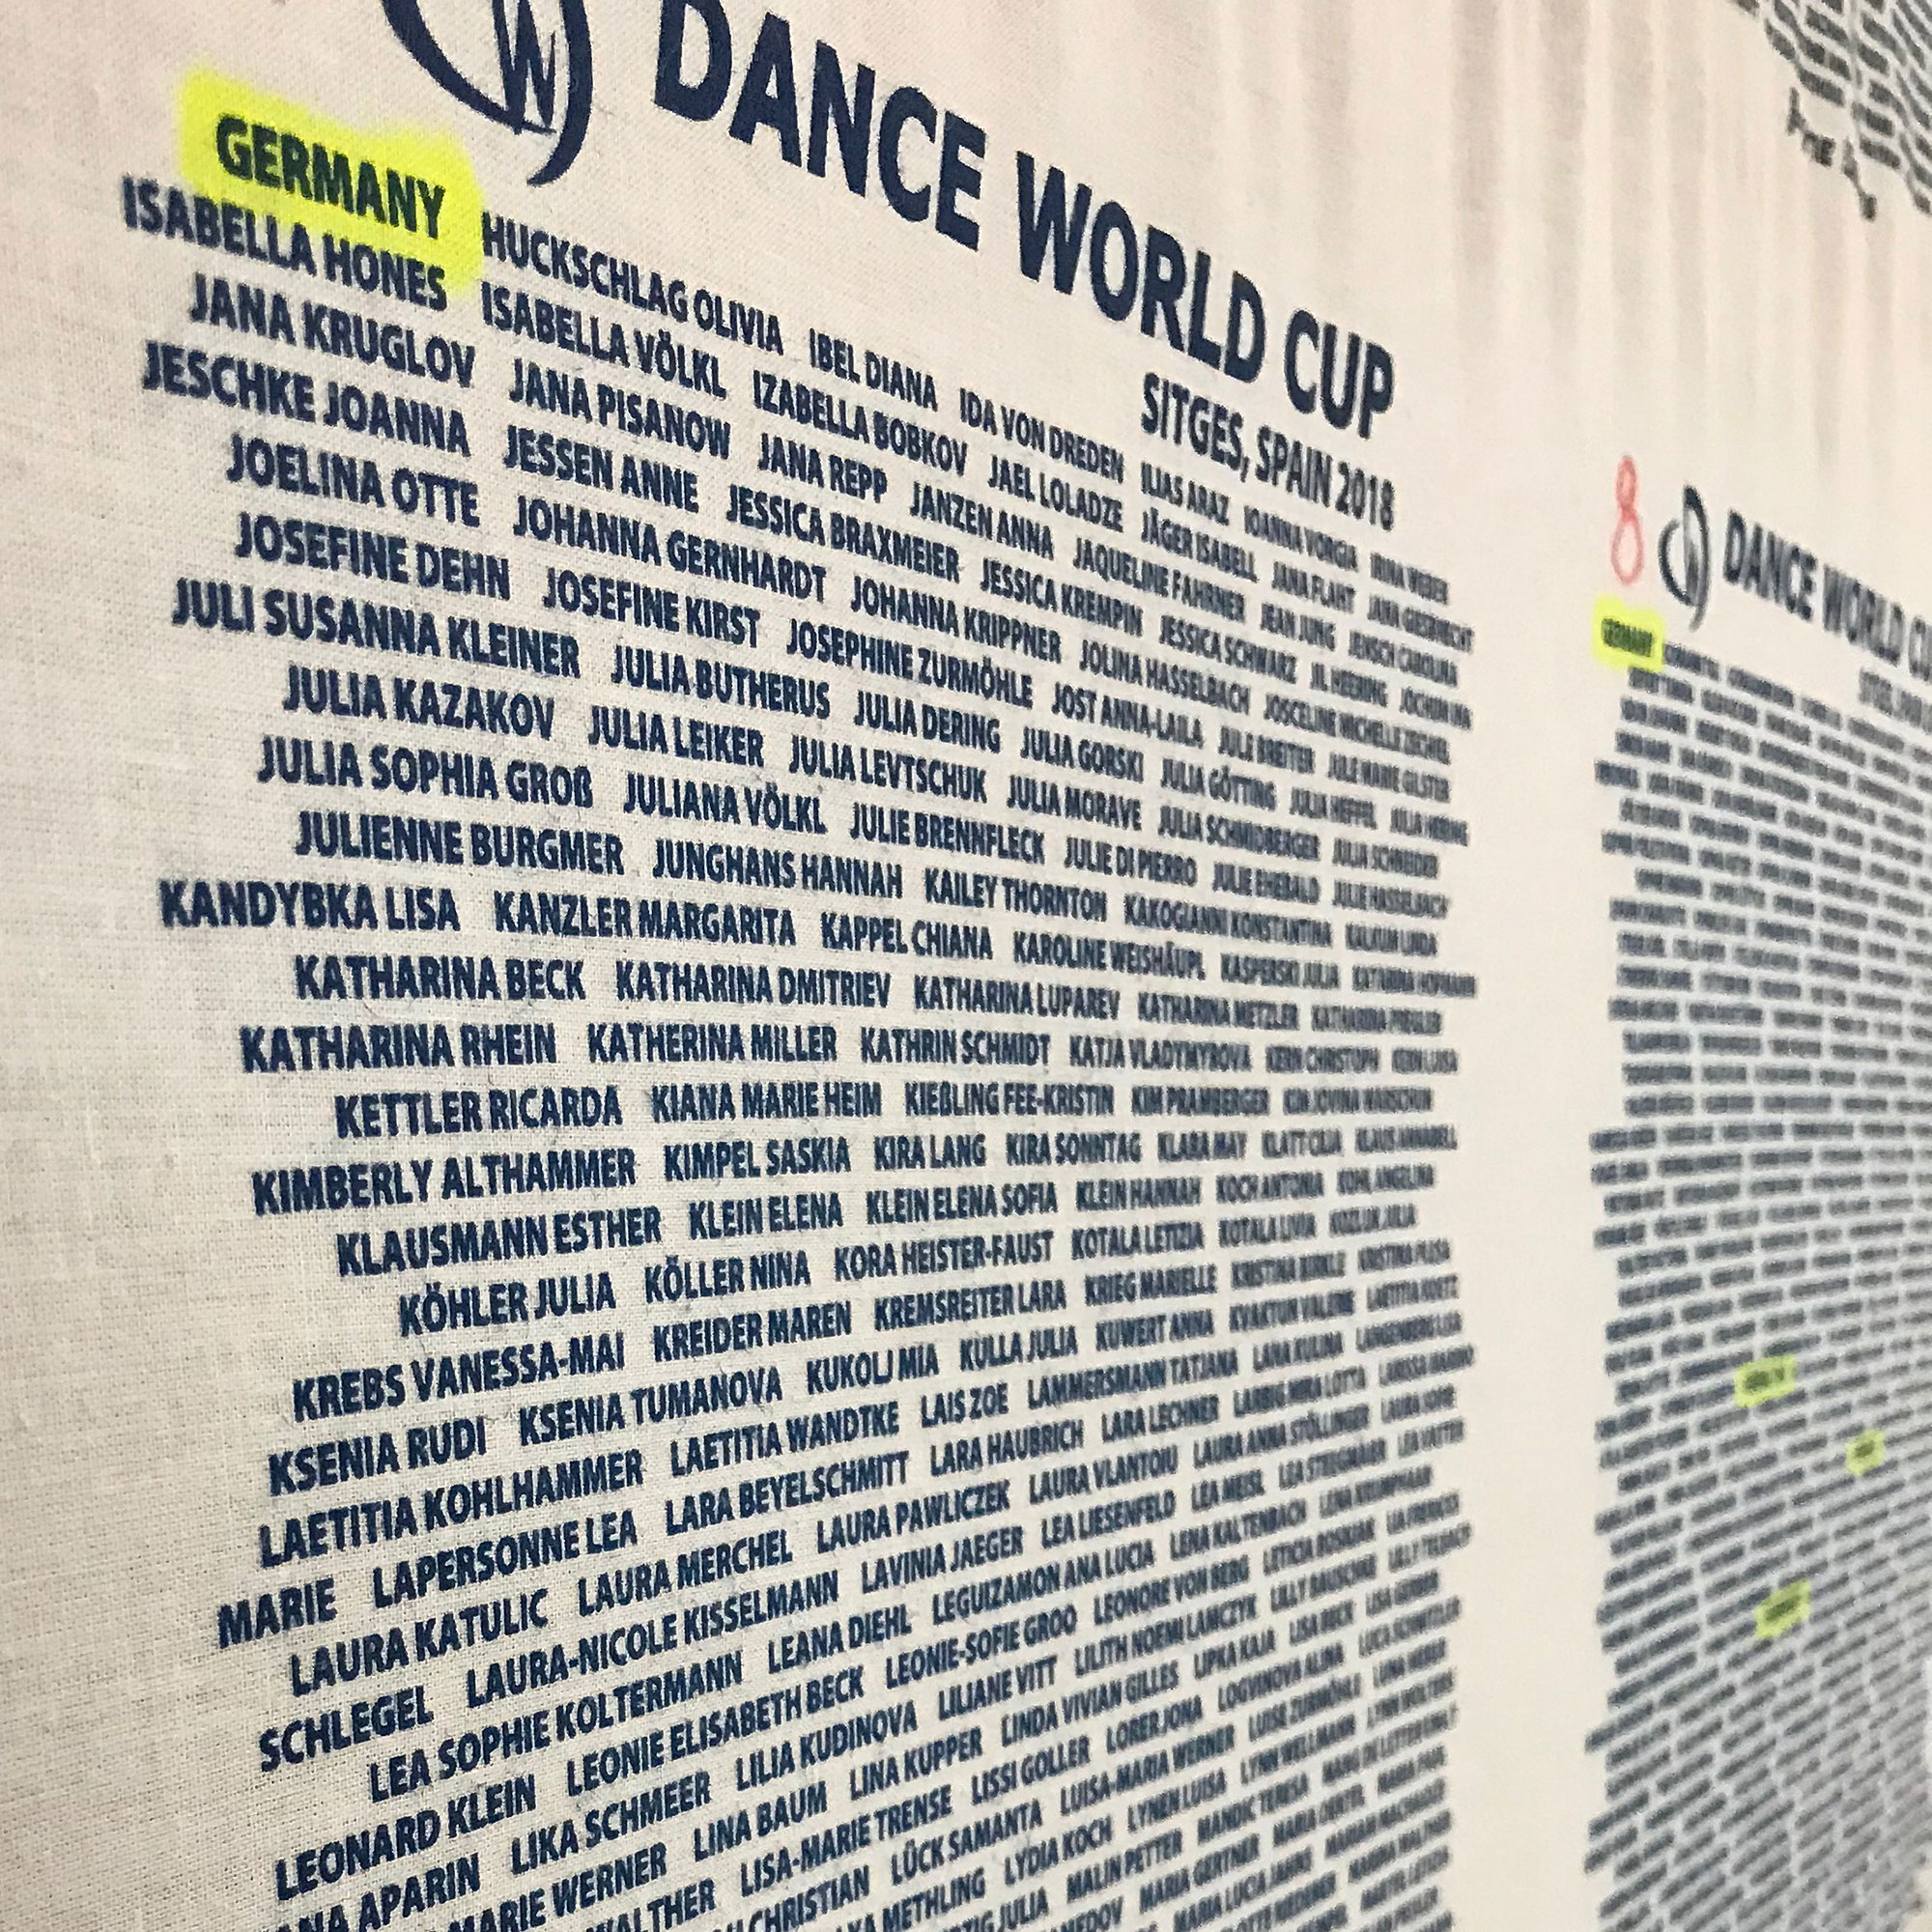 Tanztheater GRAZIA - eine der erfolgreichsten Deutschland-Vertreter beim Dance World Cup 2018 in Sitges, Barcelona